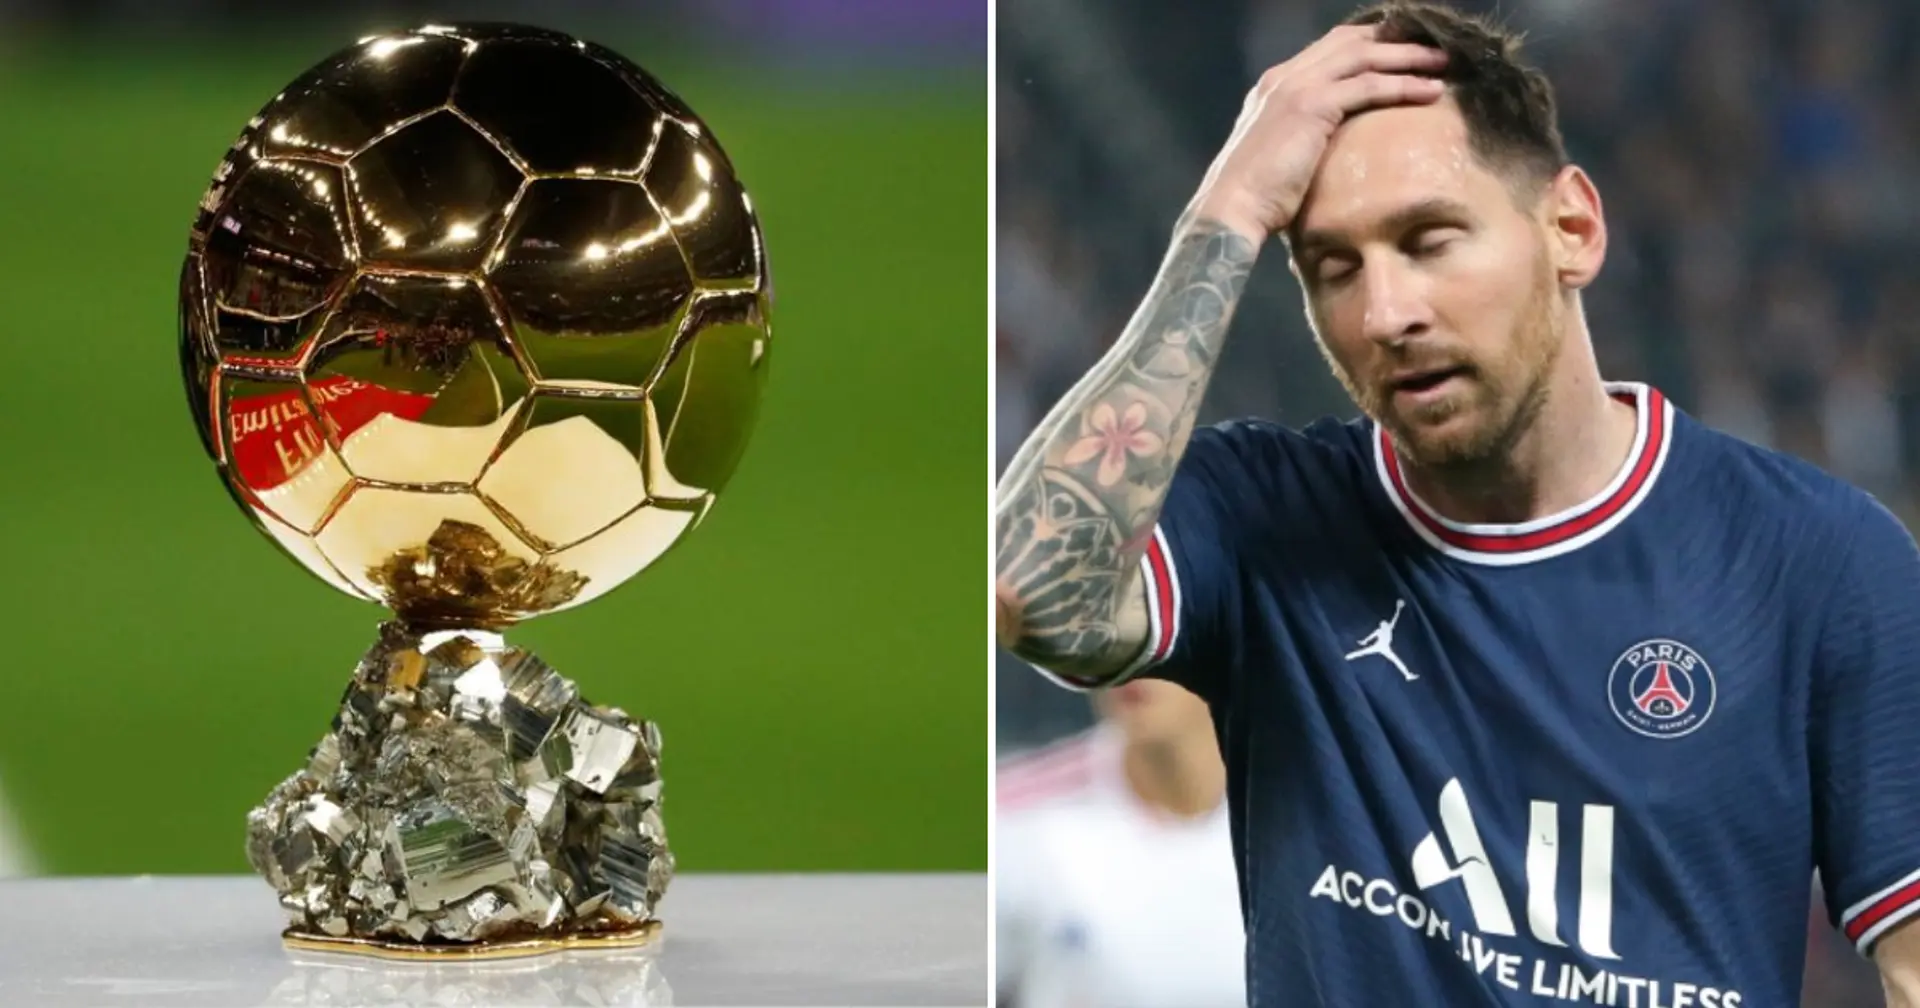 "C'est une énorme connerie": France Football démonte les rumeurs selon lesquelles Messi aurait remporté le 7e Ballon d'Or